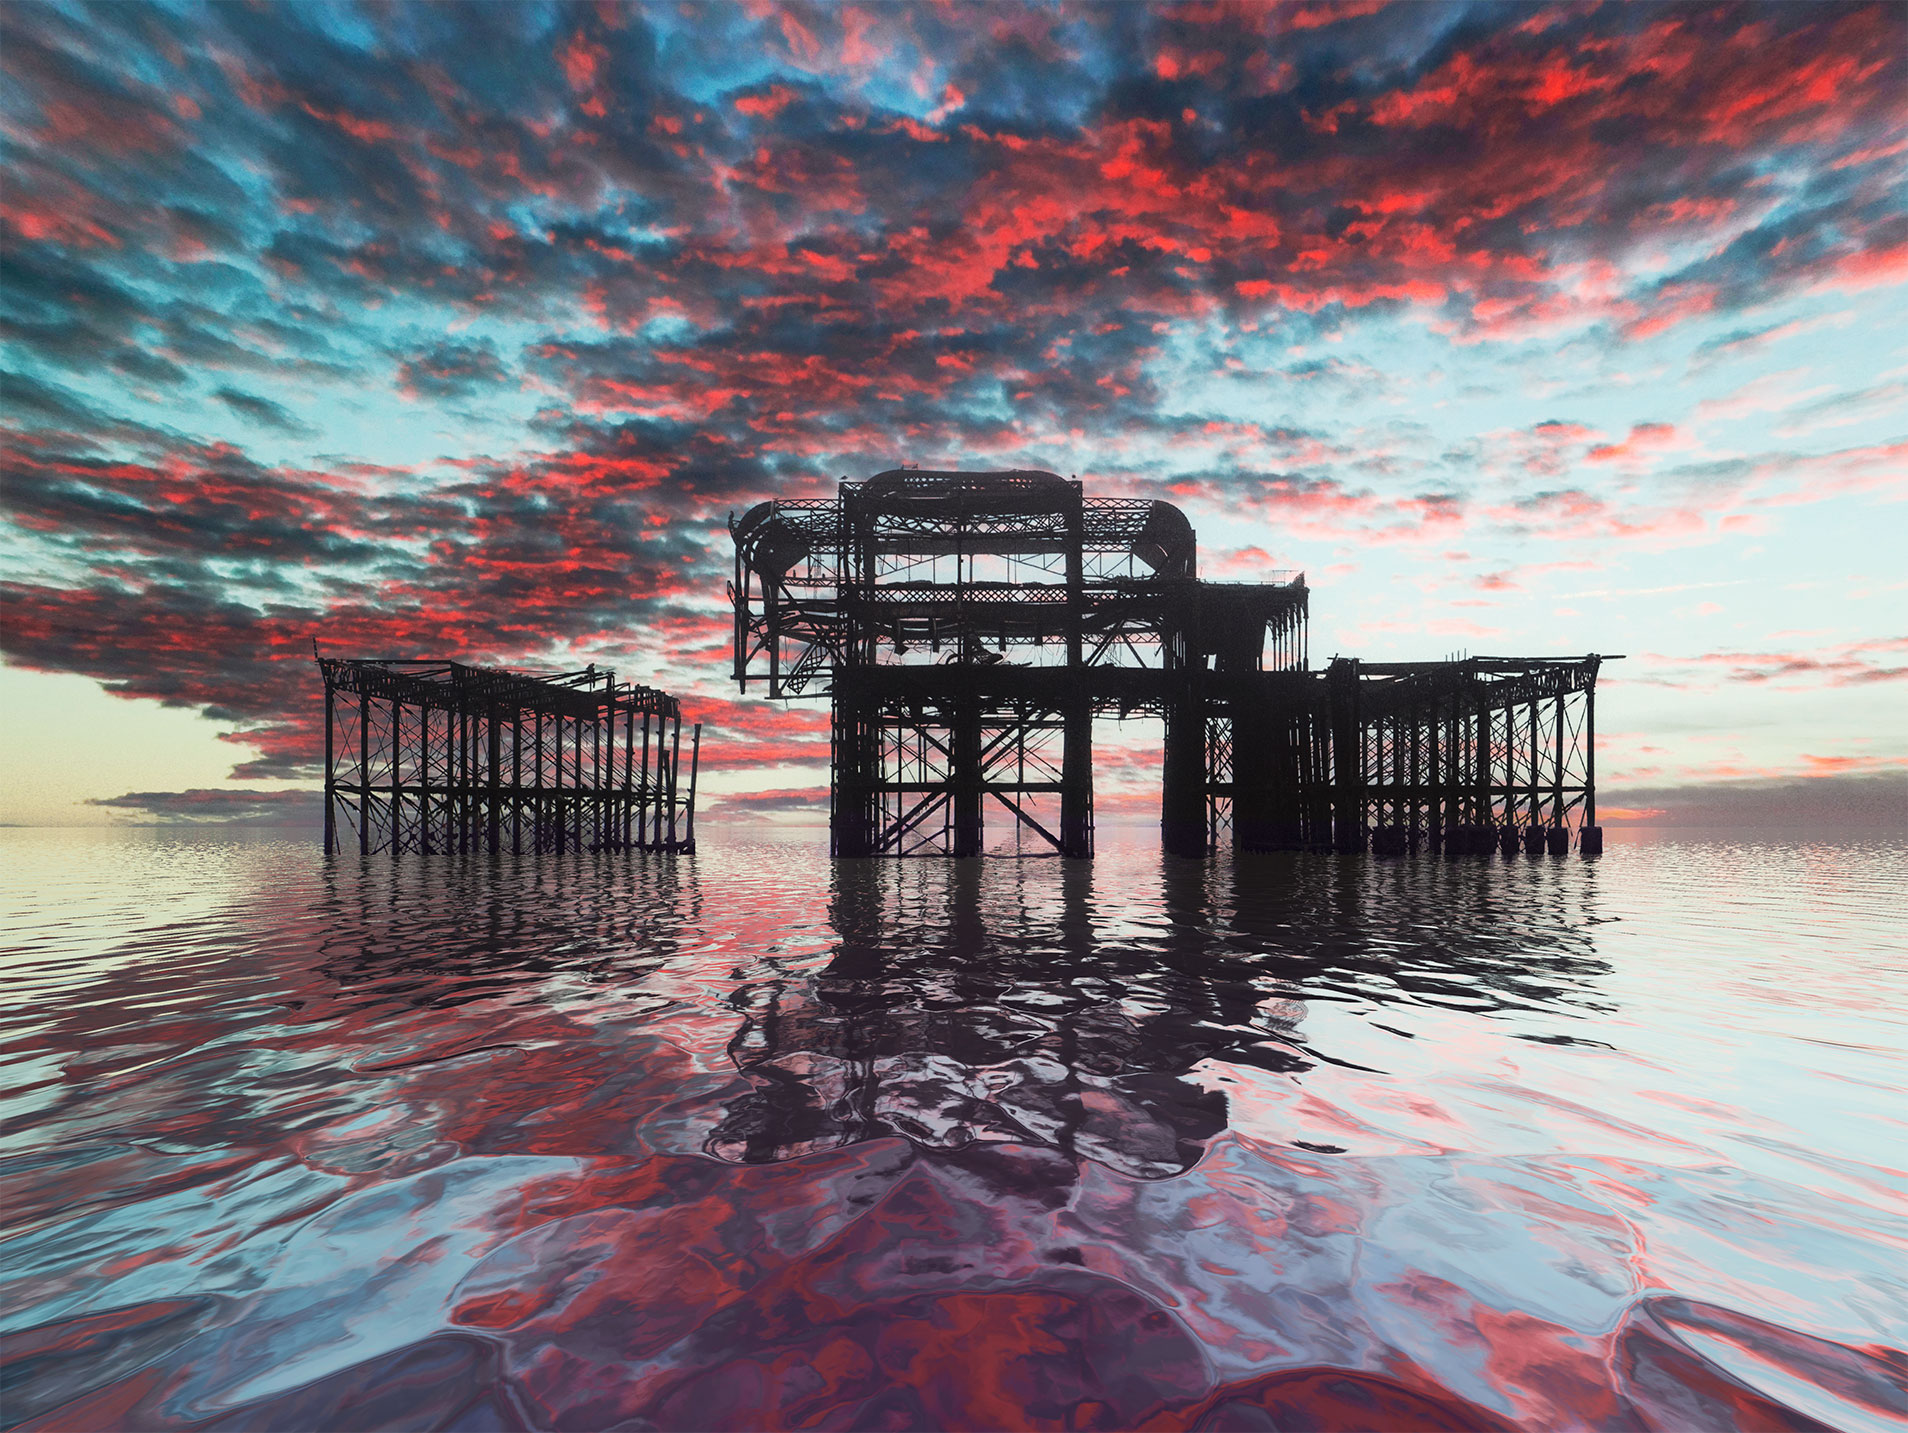 West pier fiery sky reflections. By Brian Roe